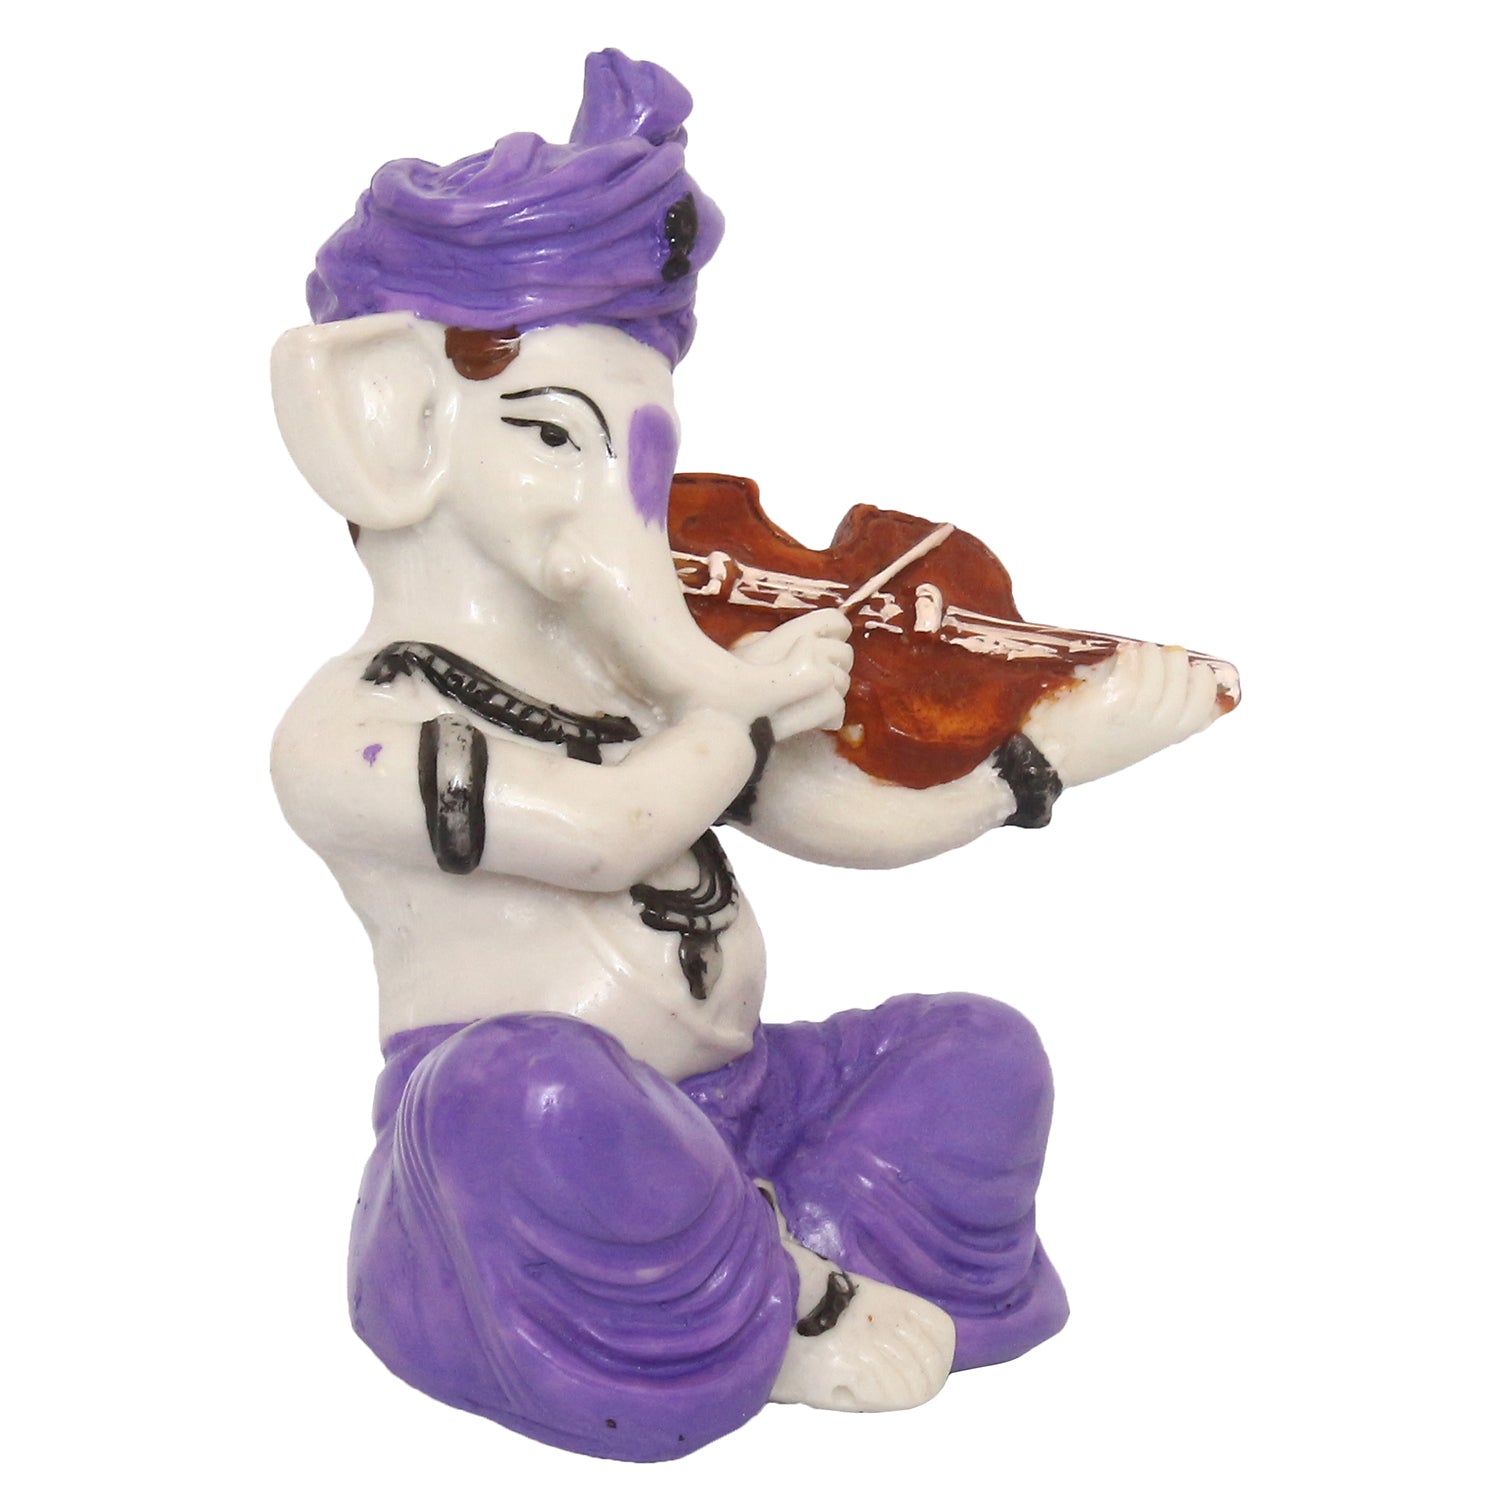 Lord Ganesha Idol Playing Violin Musical Instrument Polyresin God Idol 4